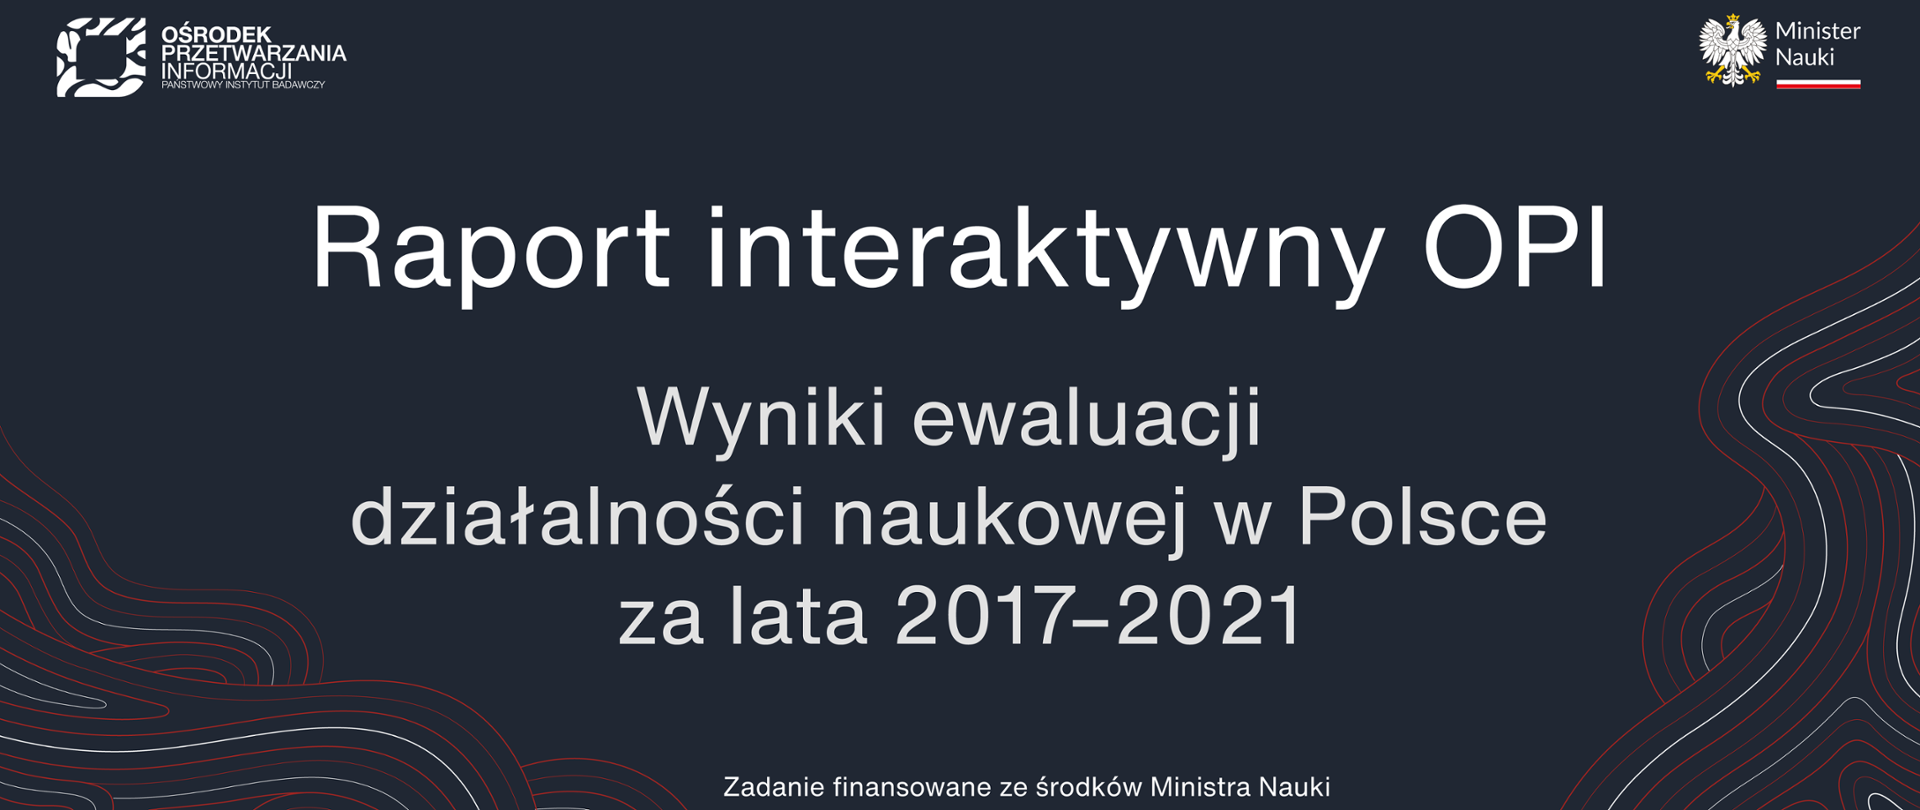 Grafika - na szarym tle napis Raport interaktywny OPI - wyniki ewaluacji działalności naukowej w Polsce za lata 2017-2021.